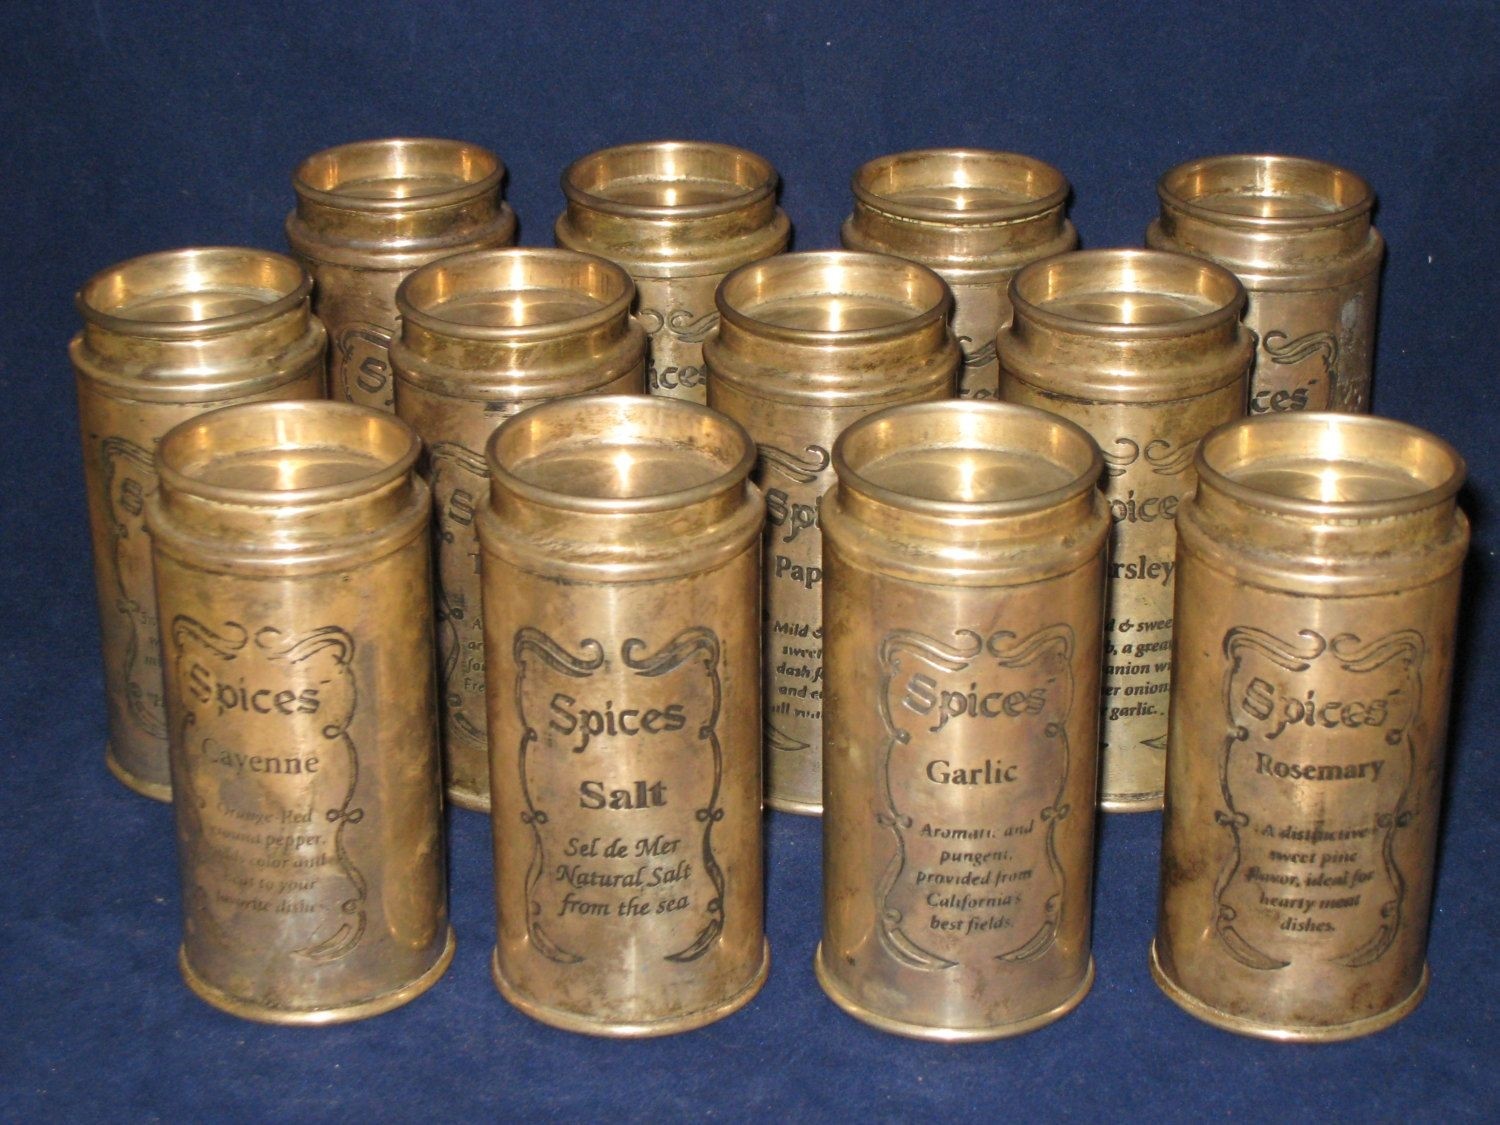 Silver plated spice jars antique vintage spice jars set of